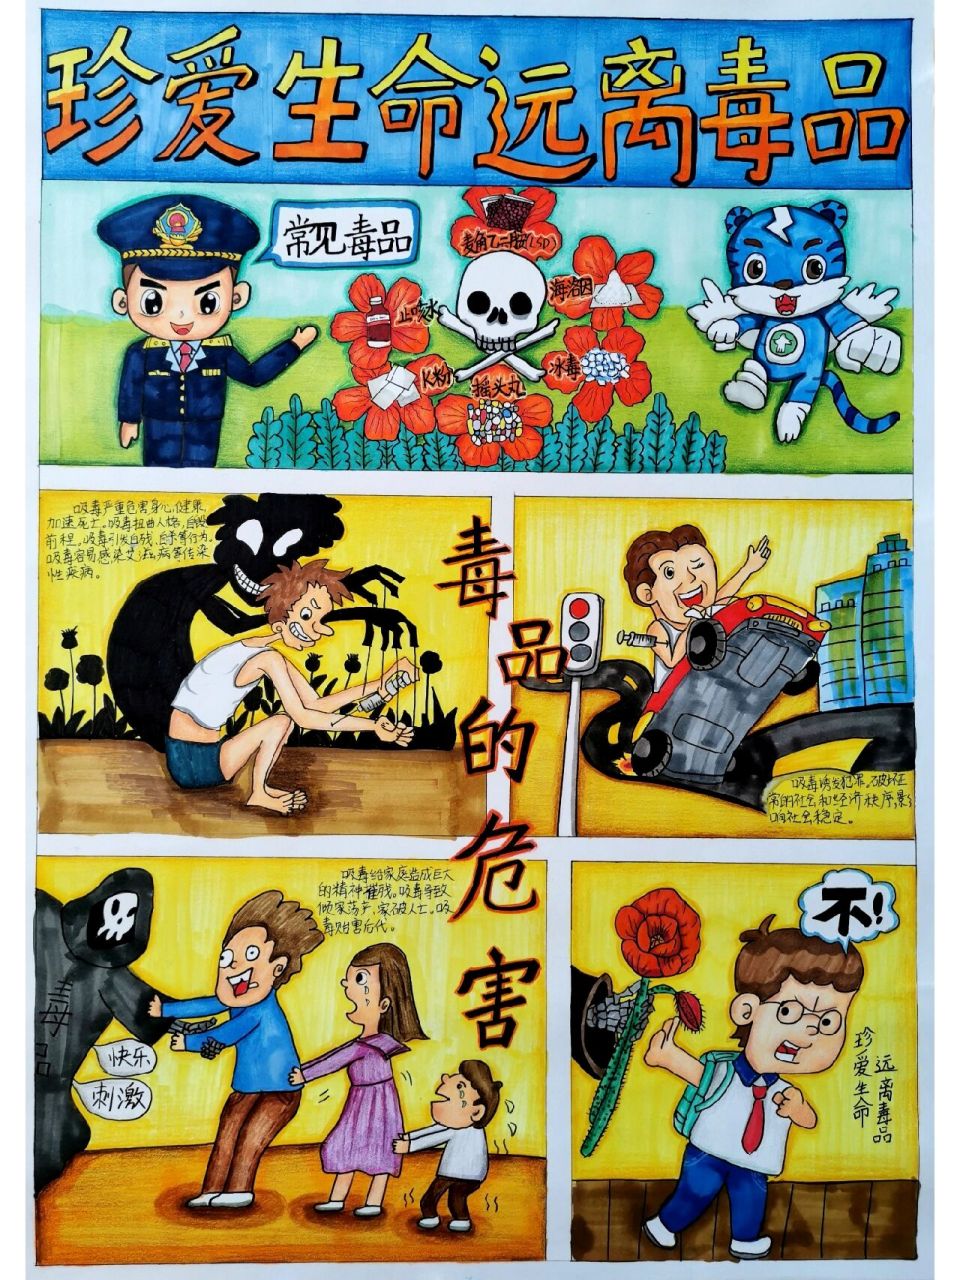 原创不易,禁抄袭,可参考 本作品已荣获广州市青少年禁毒主题绘画二等